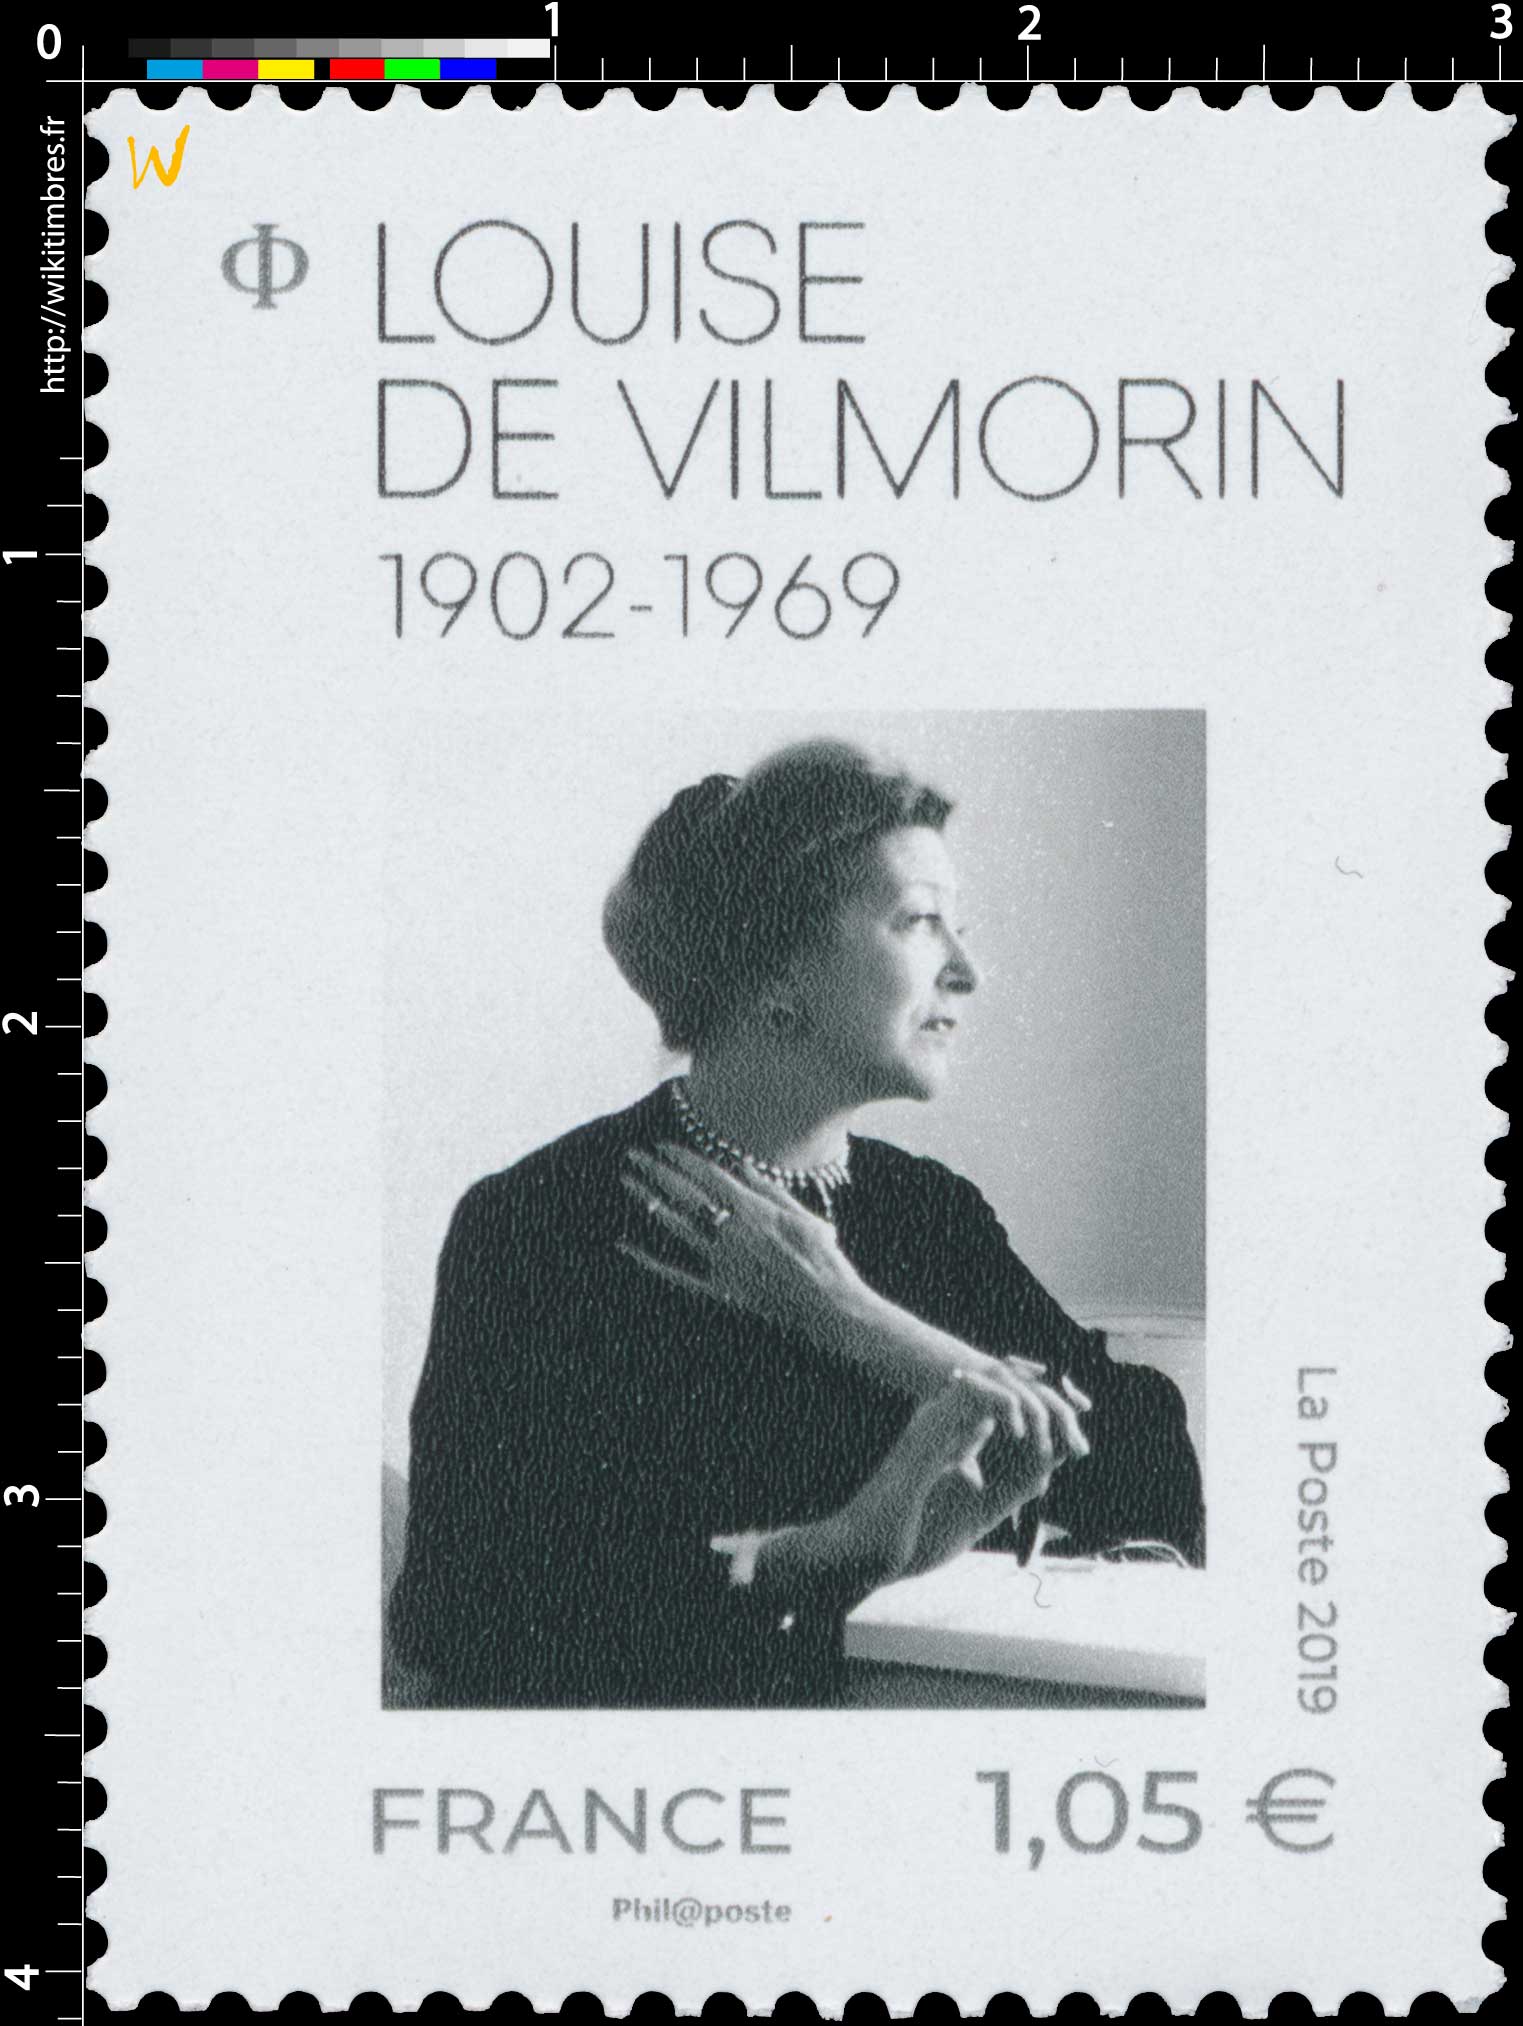 2019 Louise de Vilmorin 1902 - 1969 